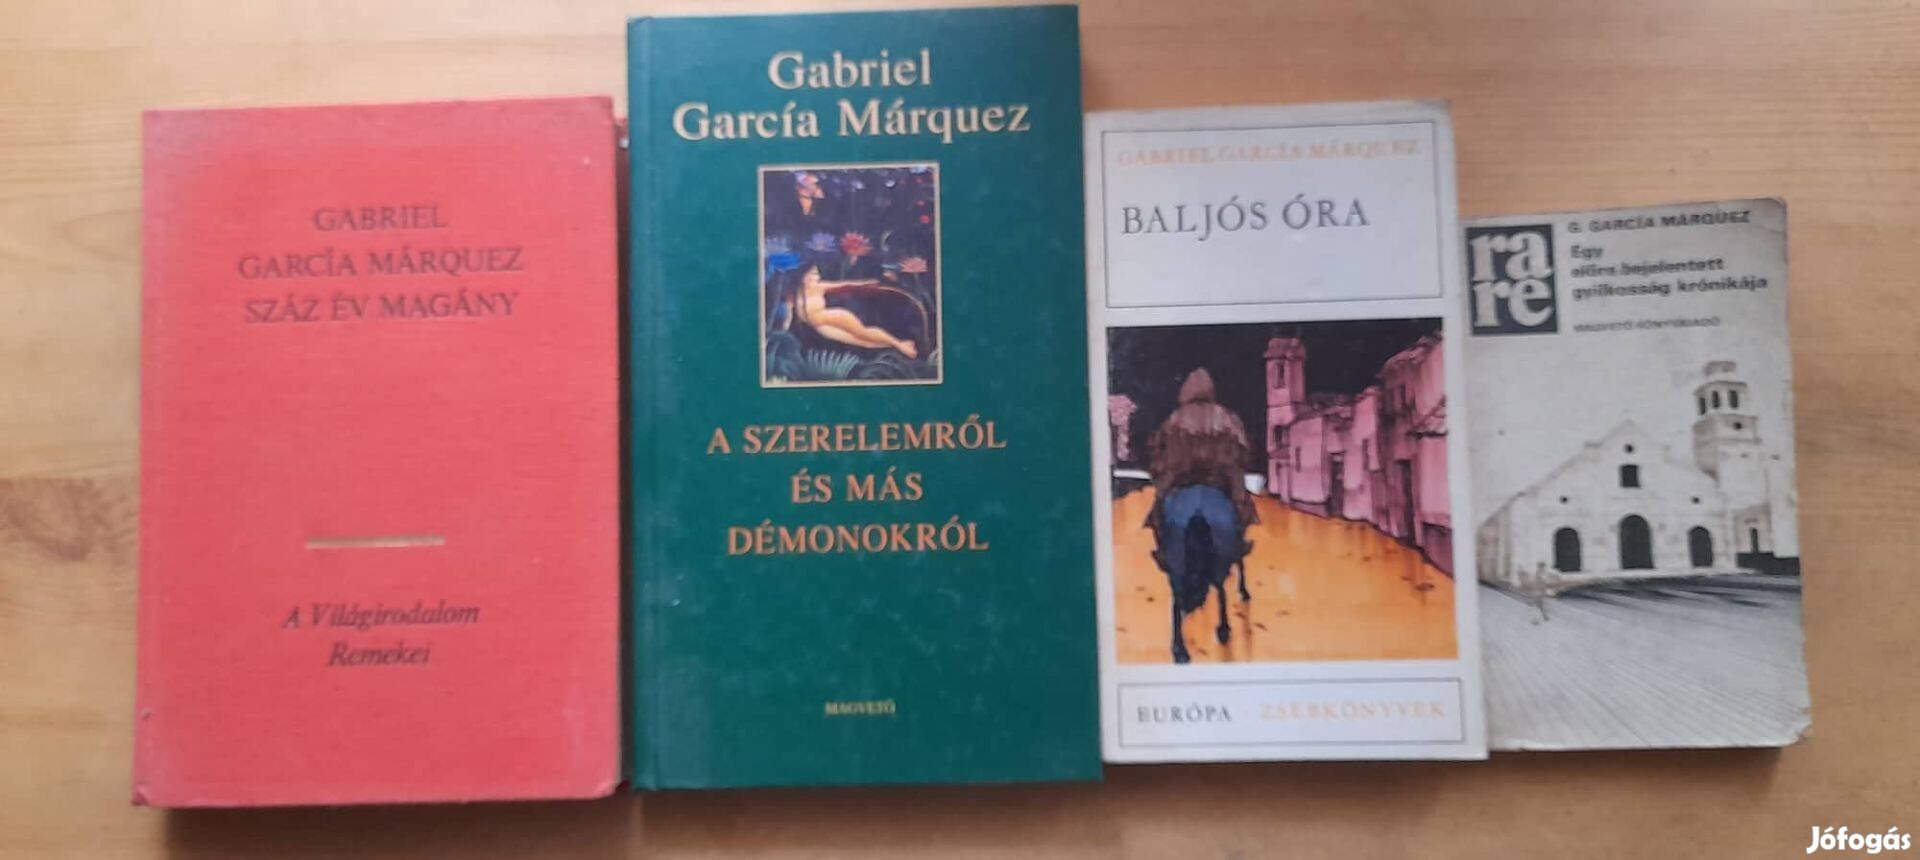 Gabriel García Márquez könyvek